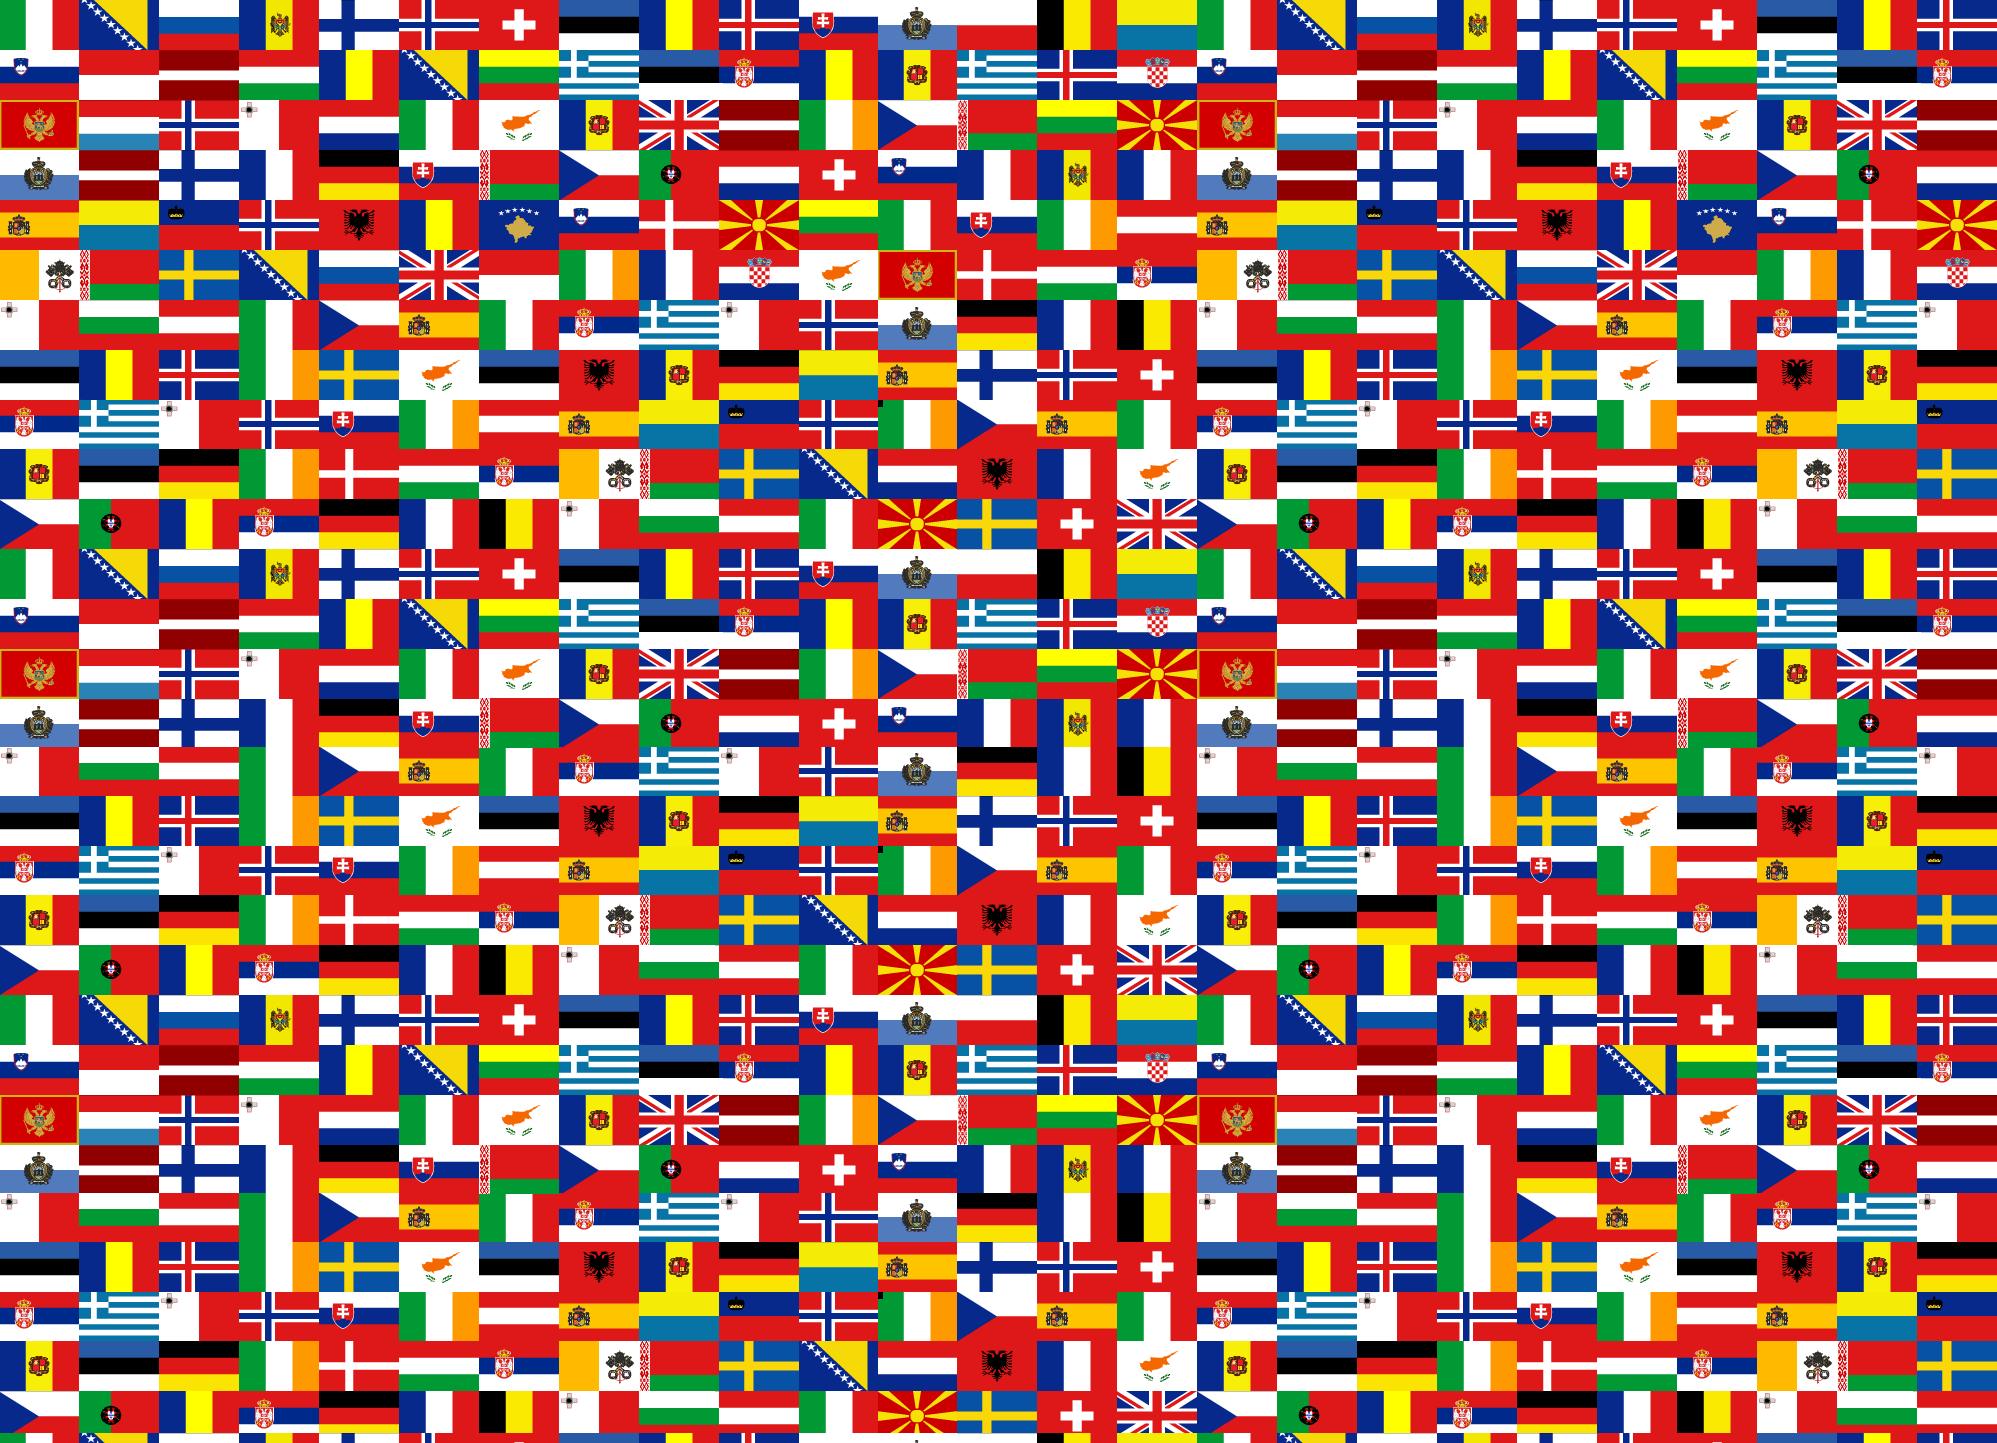 Toporopa Juegos de preguntas: Banderas de Europa